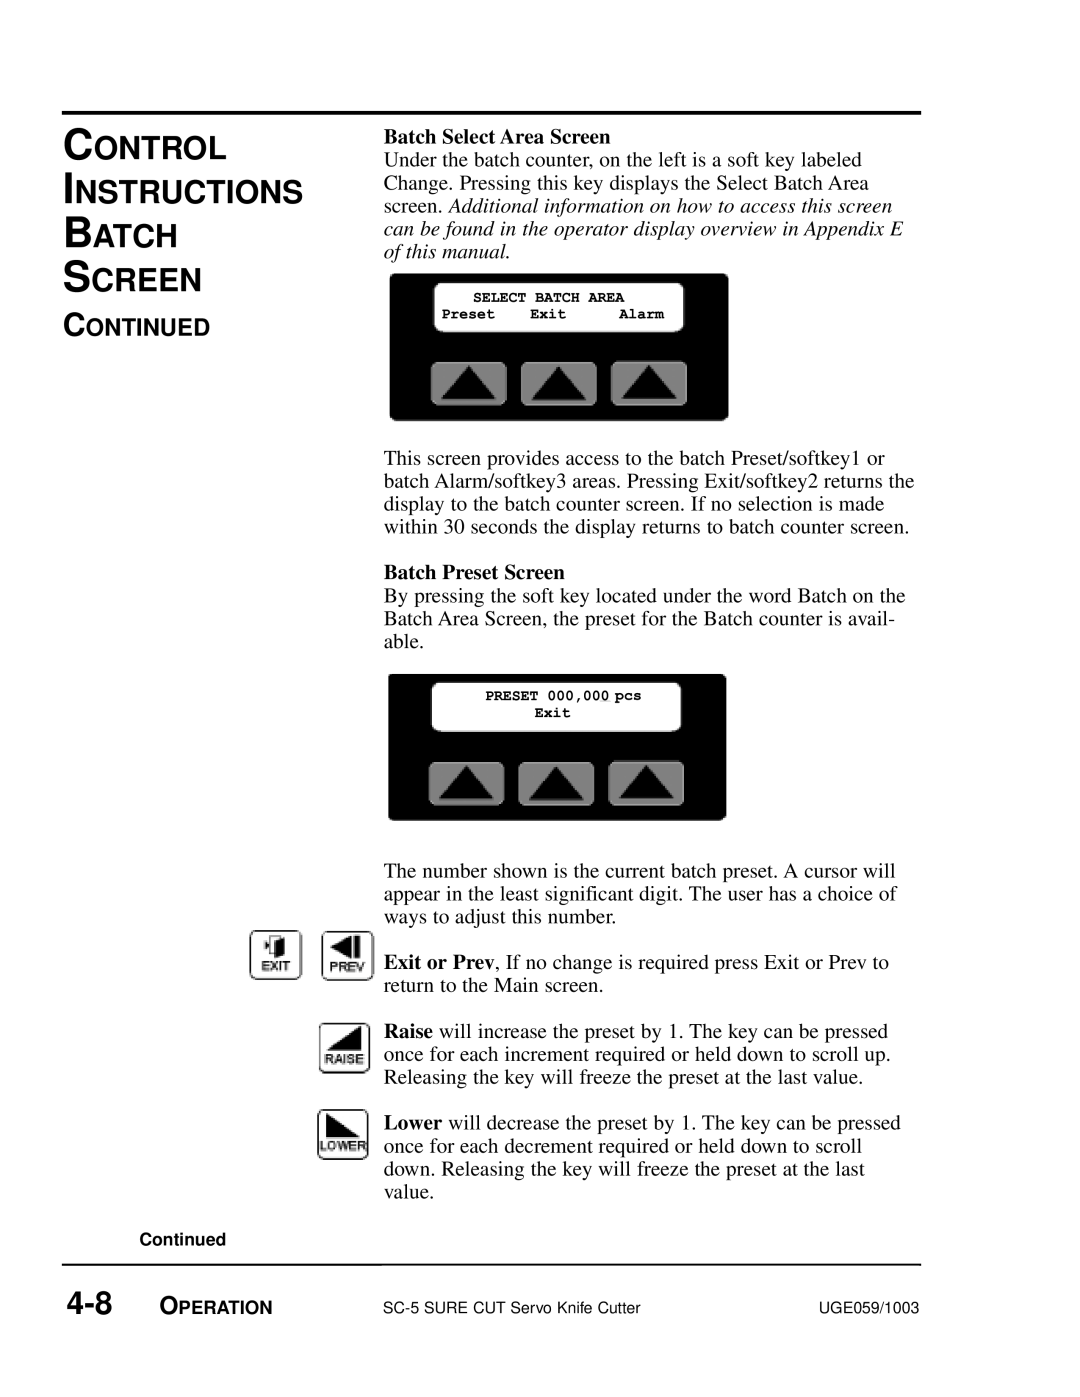 Conair SC-5 manual PRESETExit000,000pcs, Control Instructions Batch Screen, Batch Select Area Screen, Batch Preset Screen 